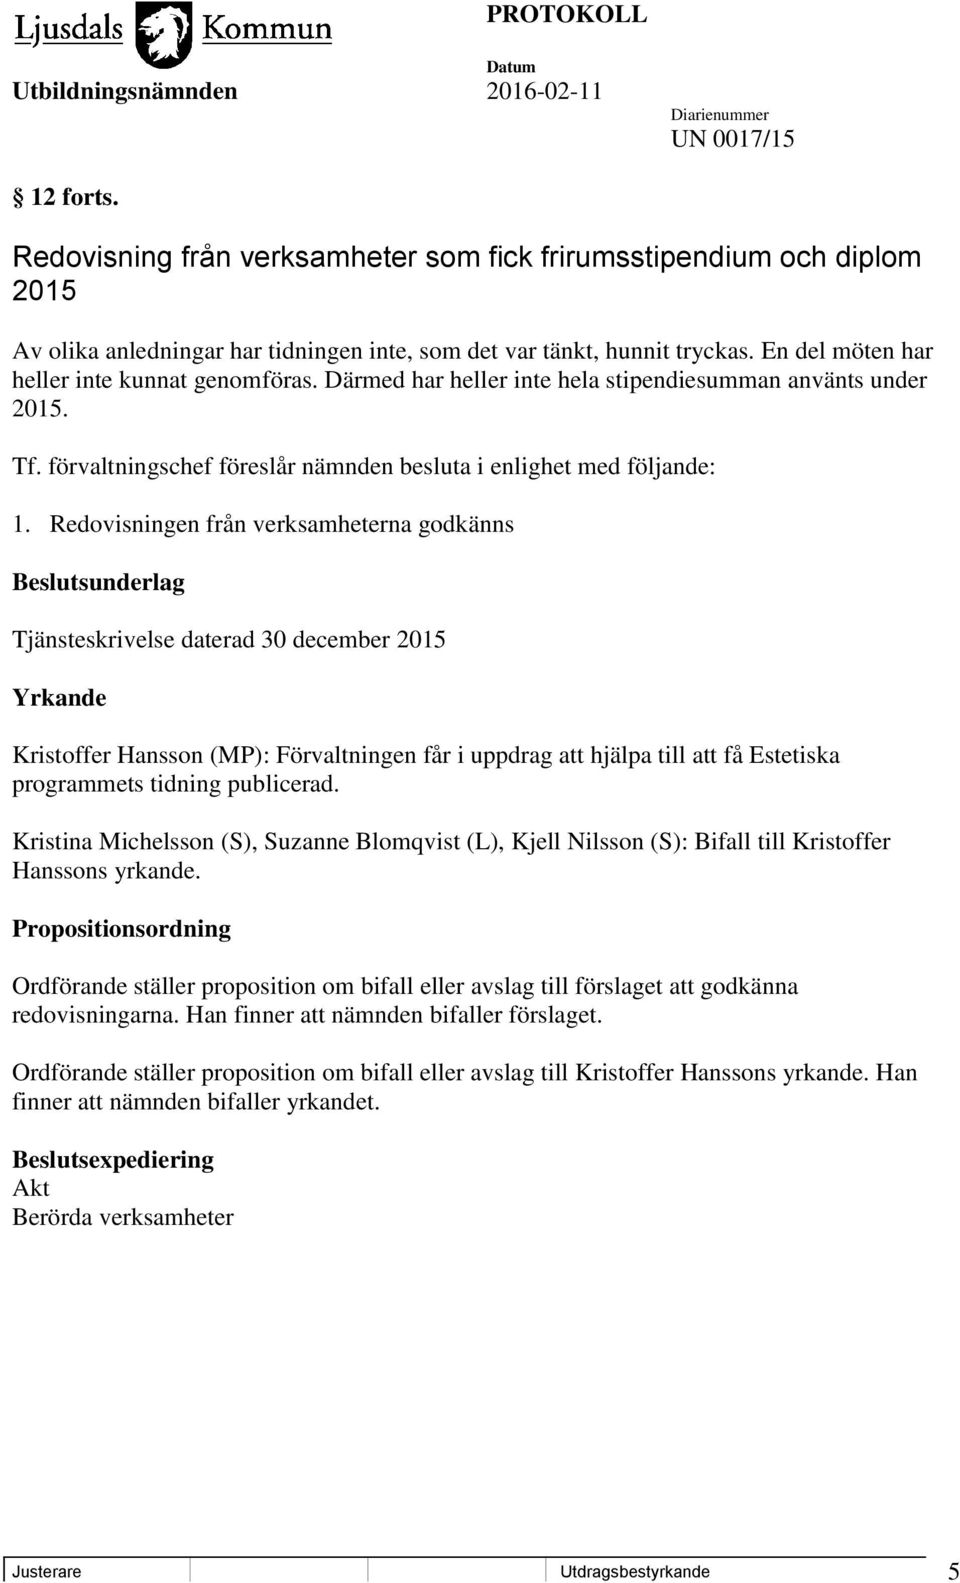 Redovisningen från verksamheterna godkänns Beslutsunderlag Tjänsteskrivelse daterad 30 december 2015 Yrkande Kristoffer Hansson (MP): Förvaltningen får i uppdrag att hjälpa till att få Estetiska